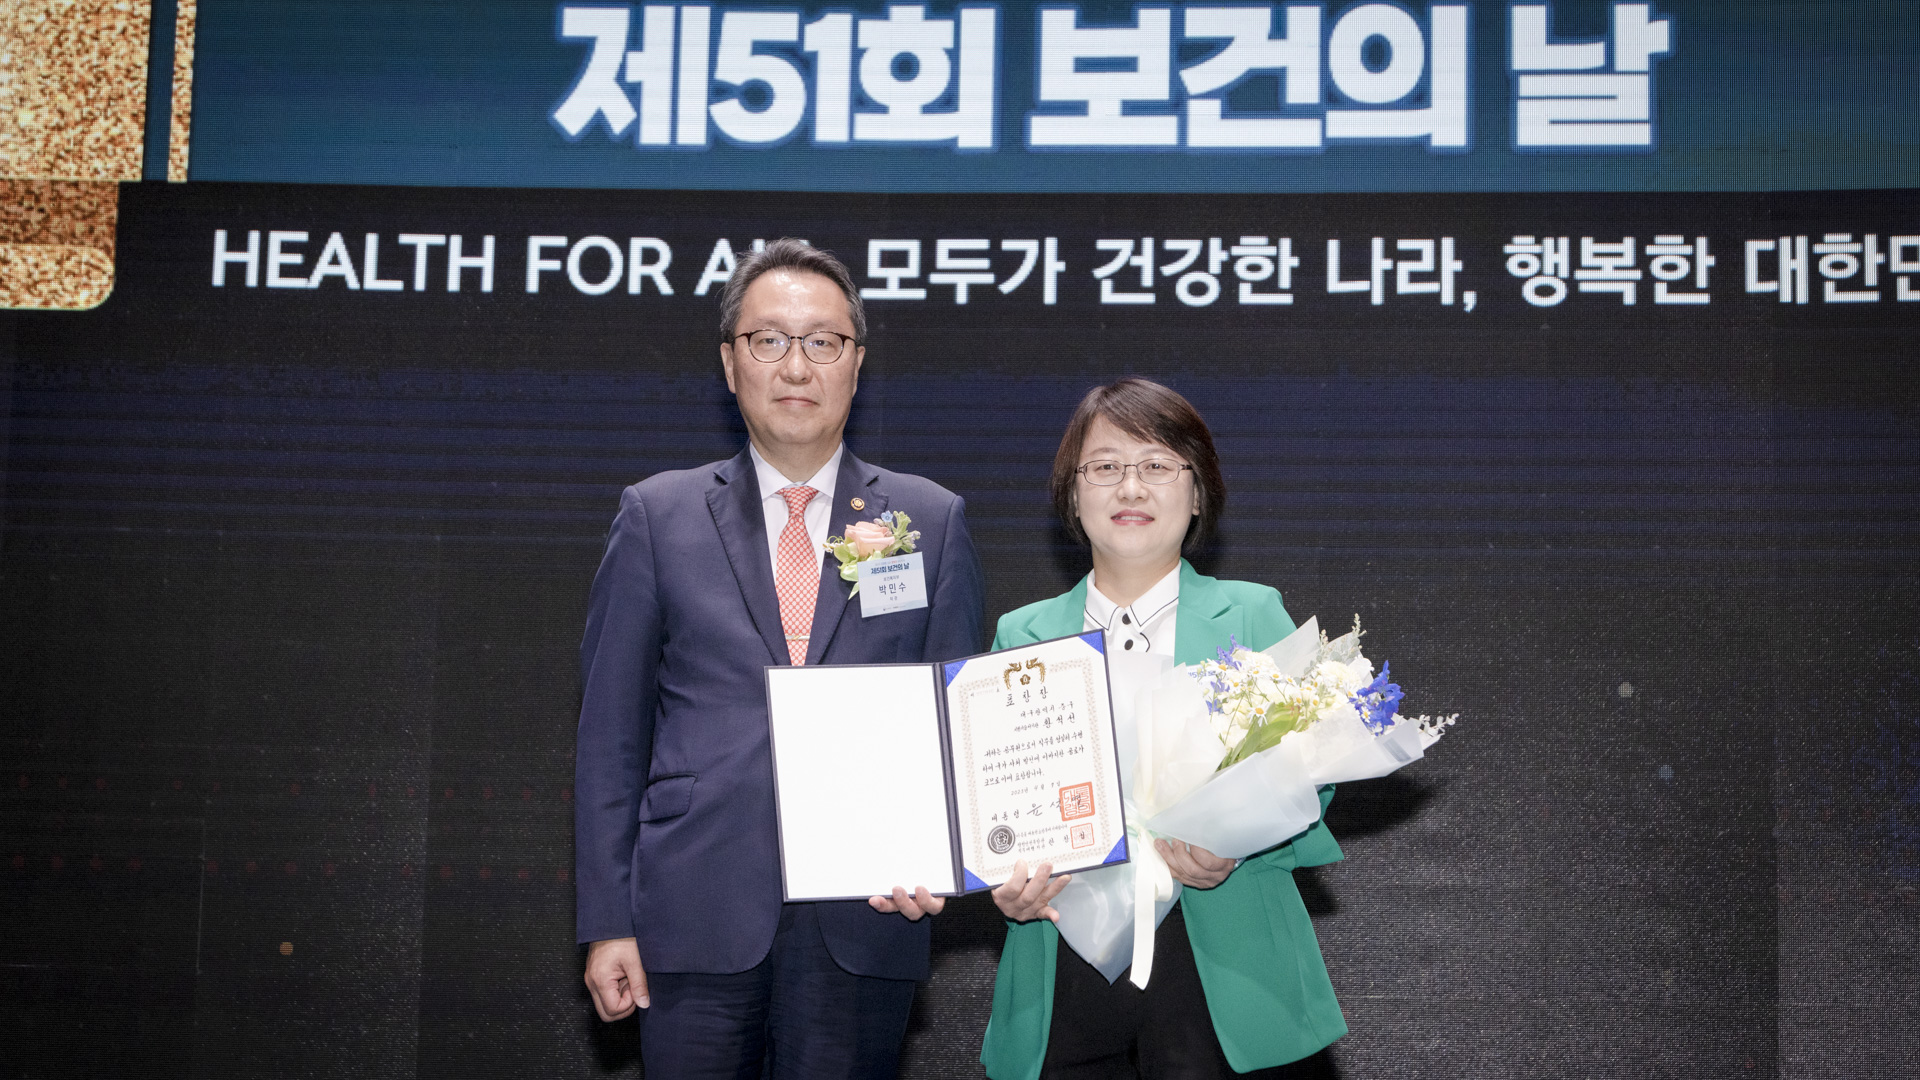 ‘모두가 건강한 나라, 행복한 대한민국’ 제51회 보건의 날 기념식 개최 사진46